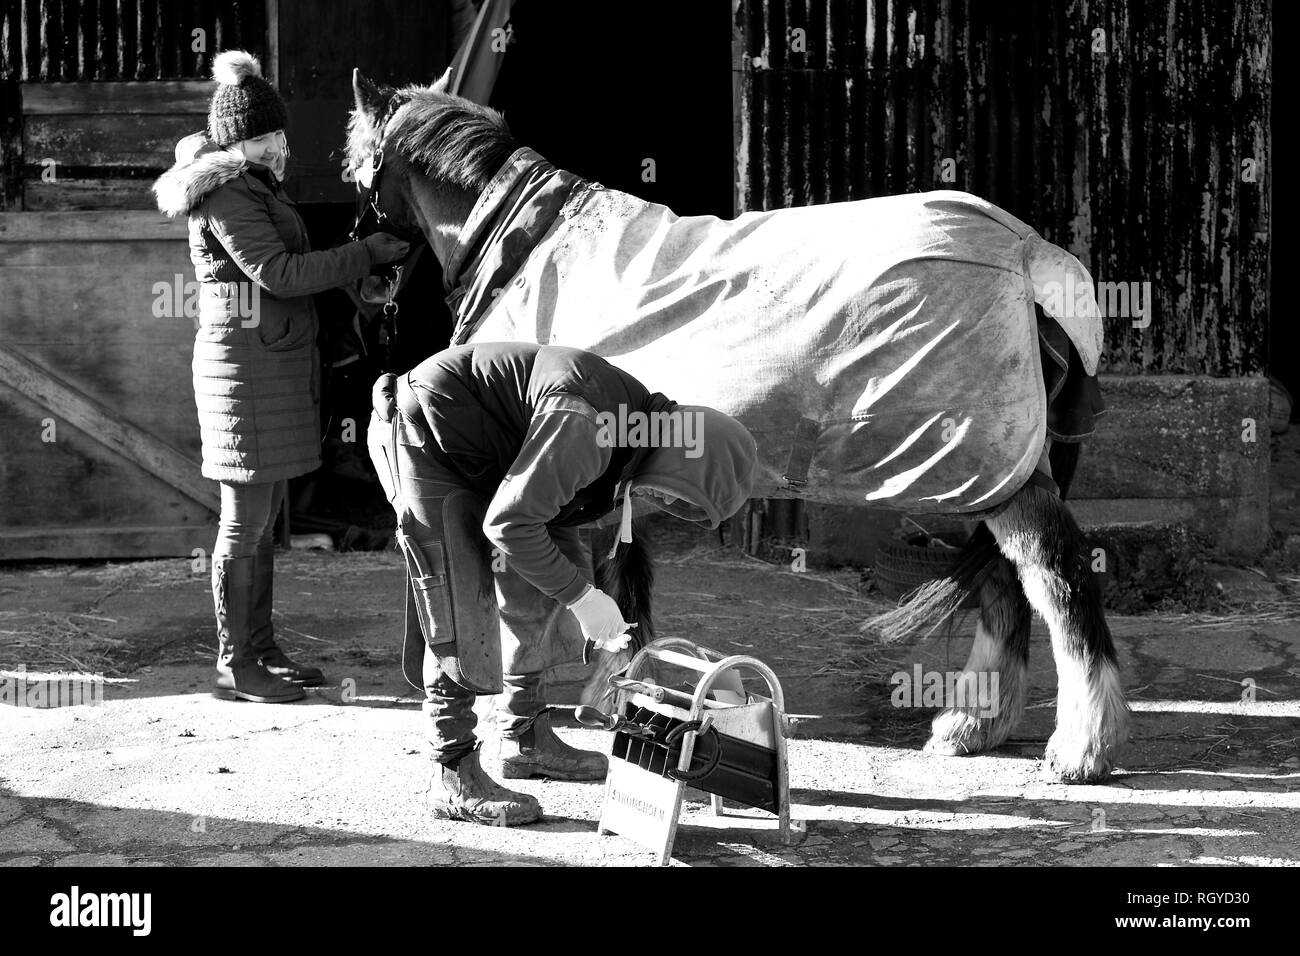 Ein gutes Beispiel für einen landwirtschaftlichen Beruf, ein hufschmied bei der Arbeit shoding ein Pferd. Stockfoto